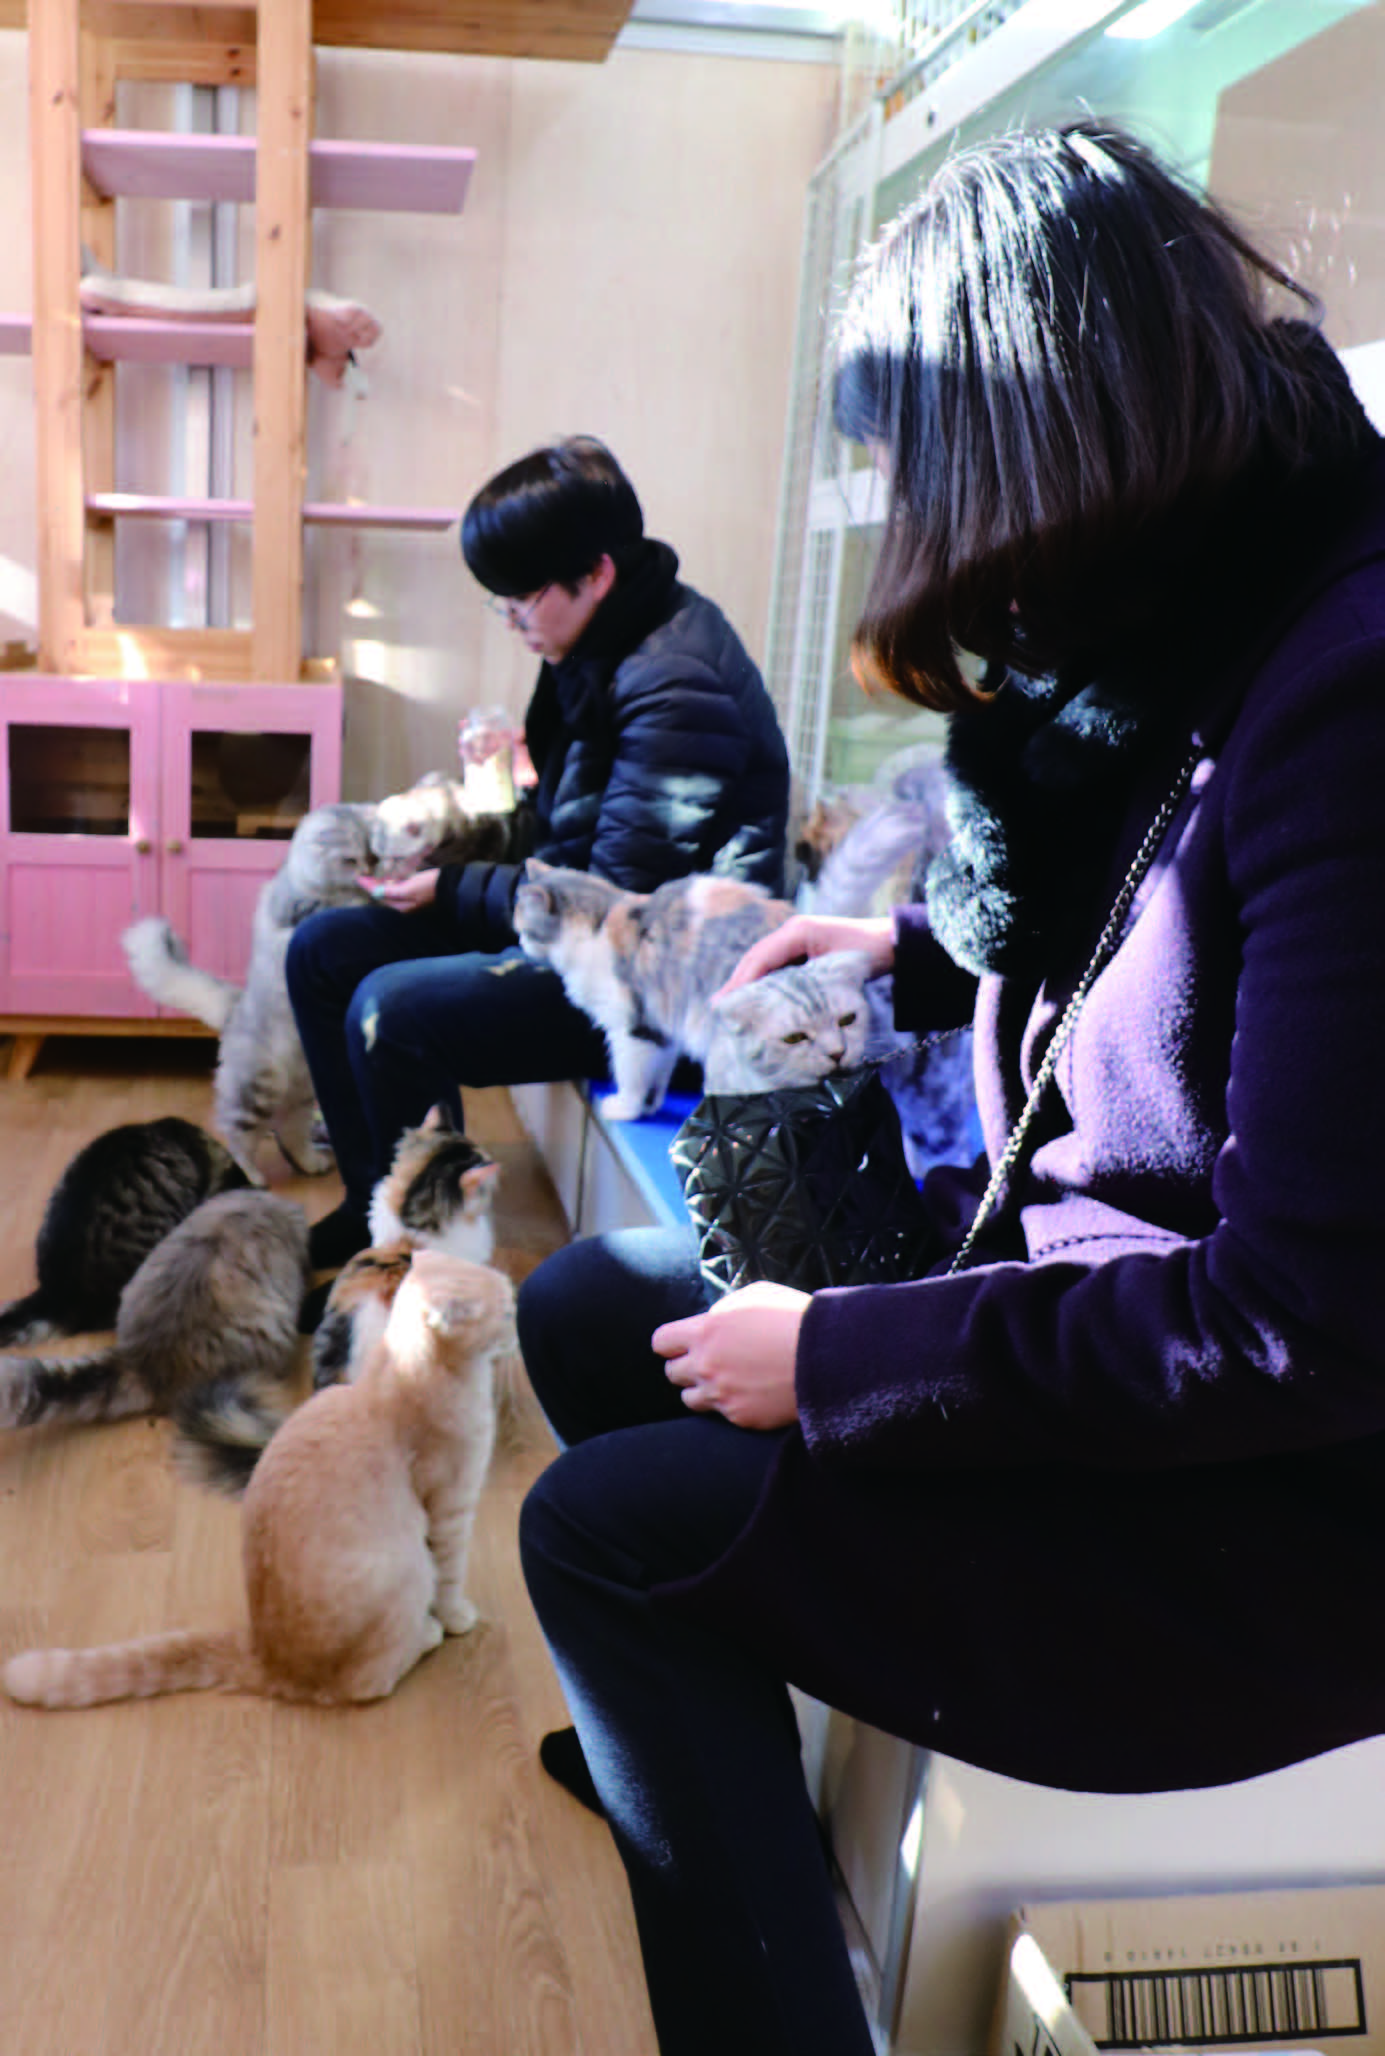 캣카페 '나ㅇ야'에서는 고양이를 직접 만지며 놀 수 있다.